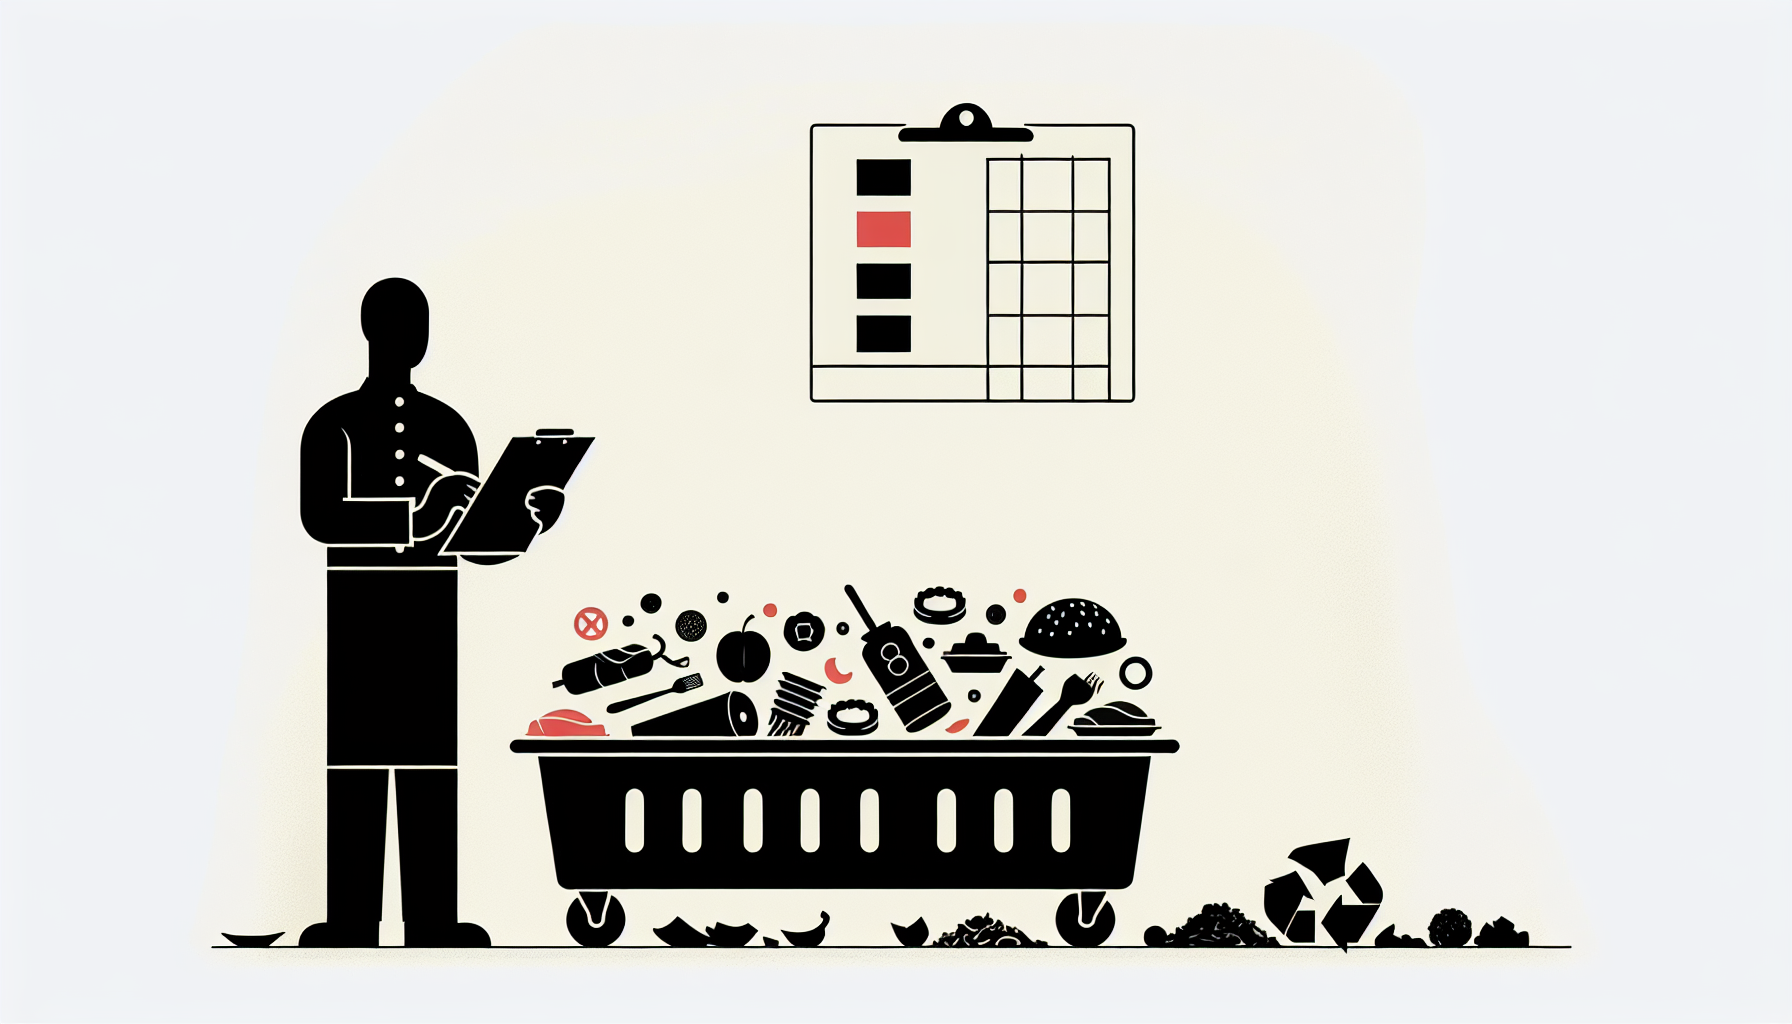 Food waste log checklist